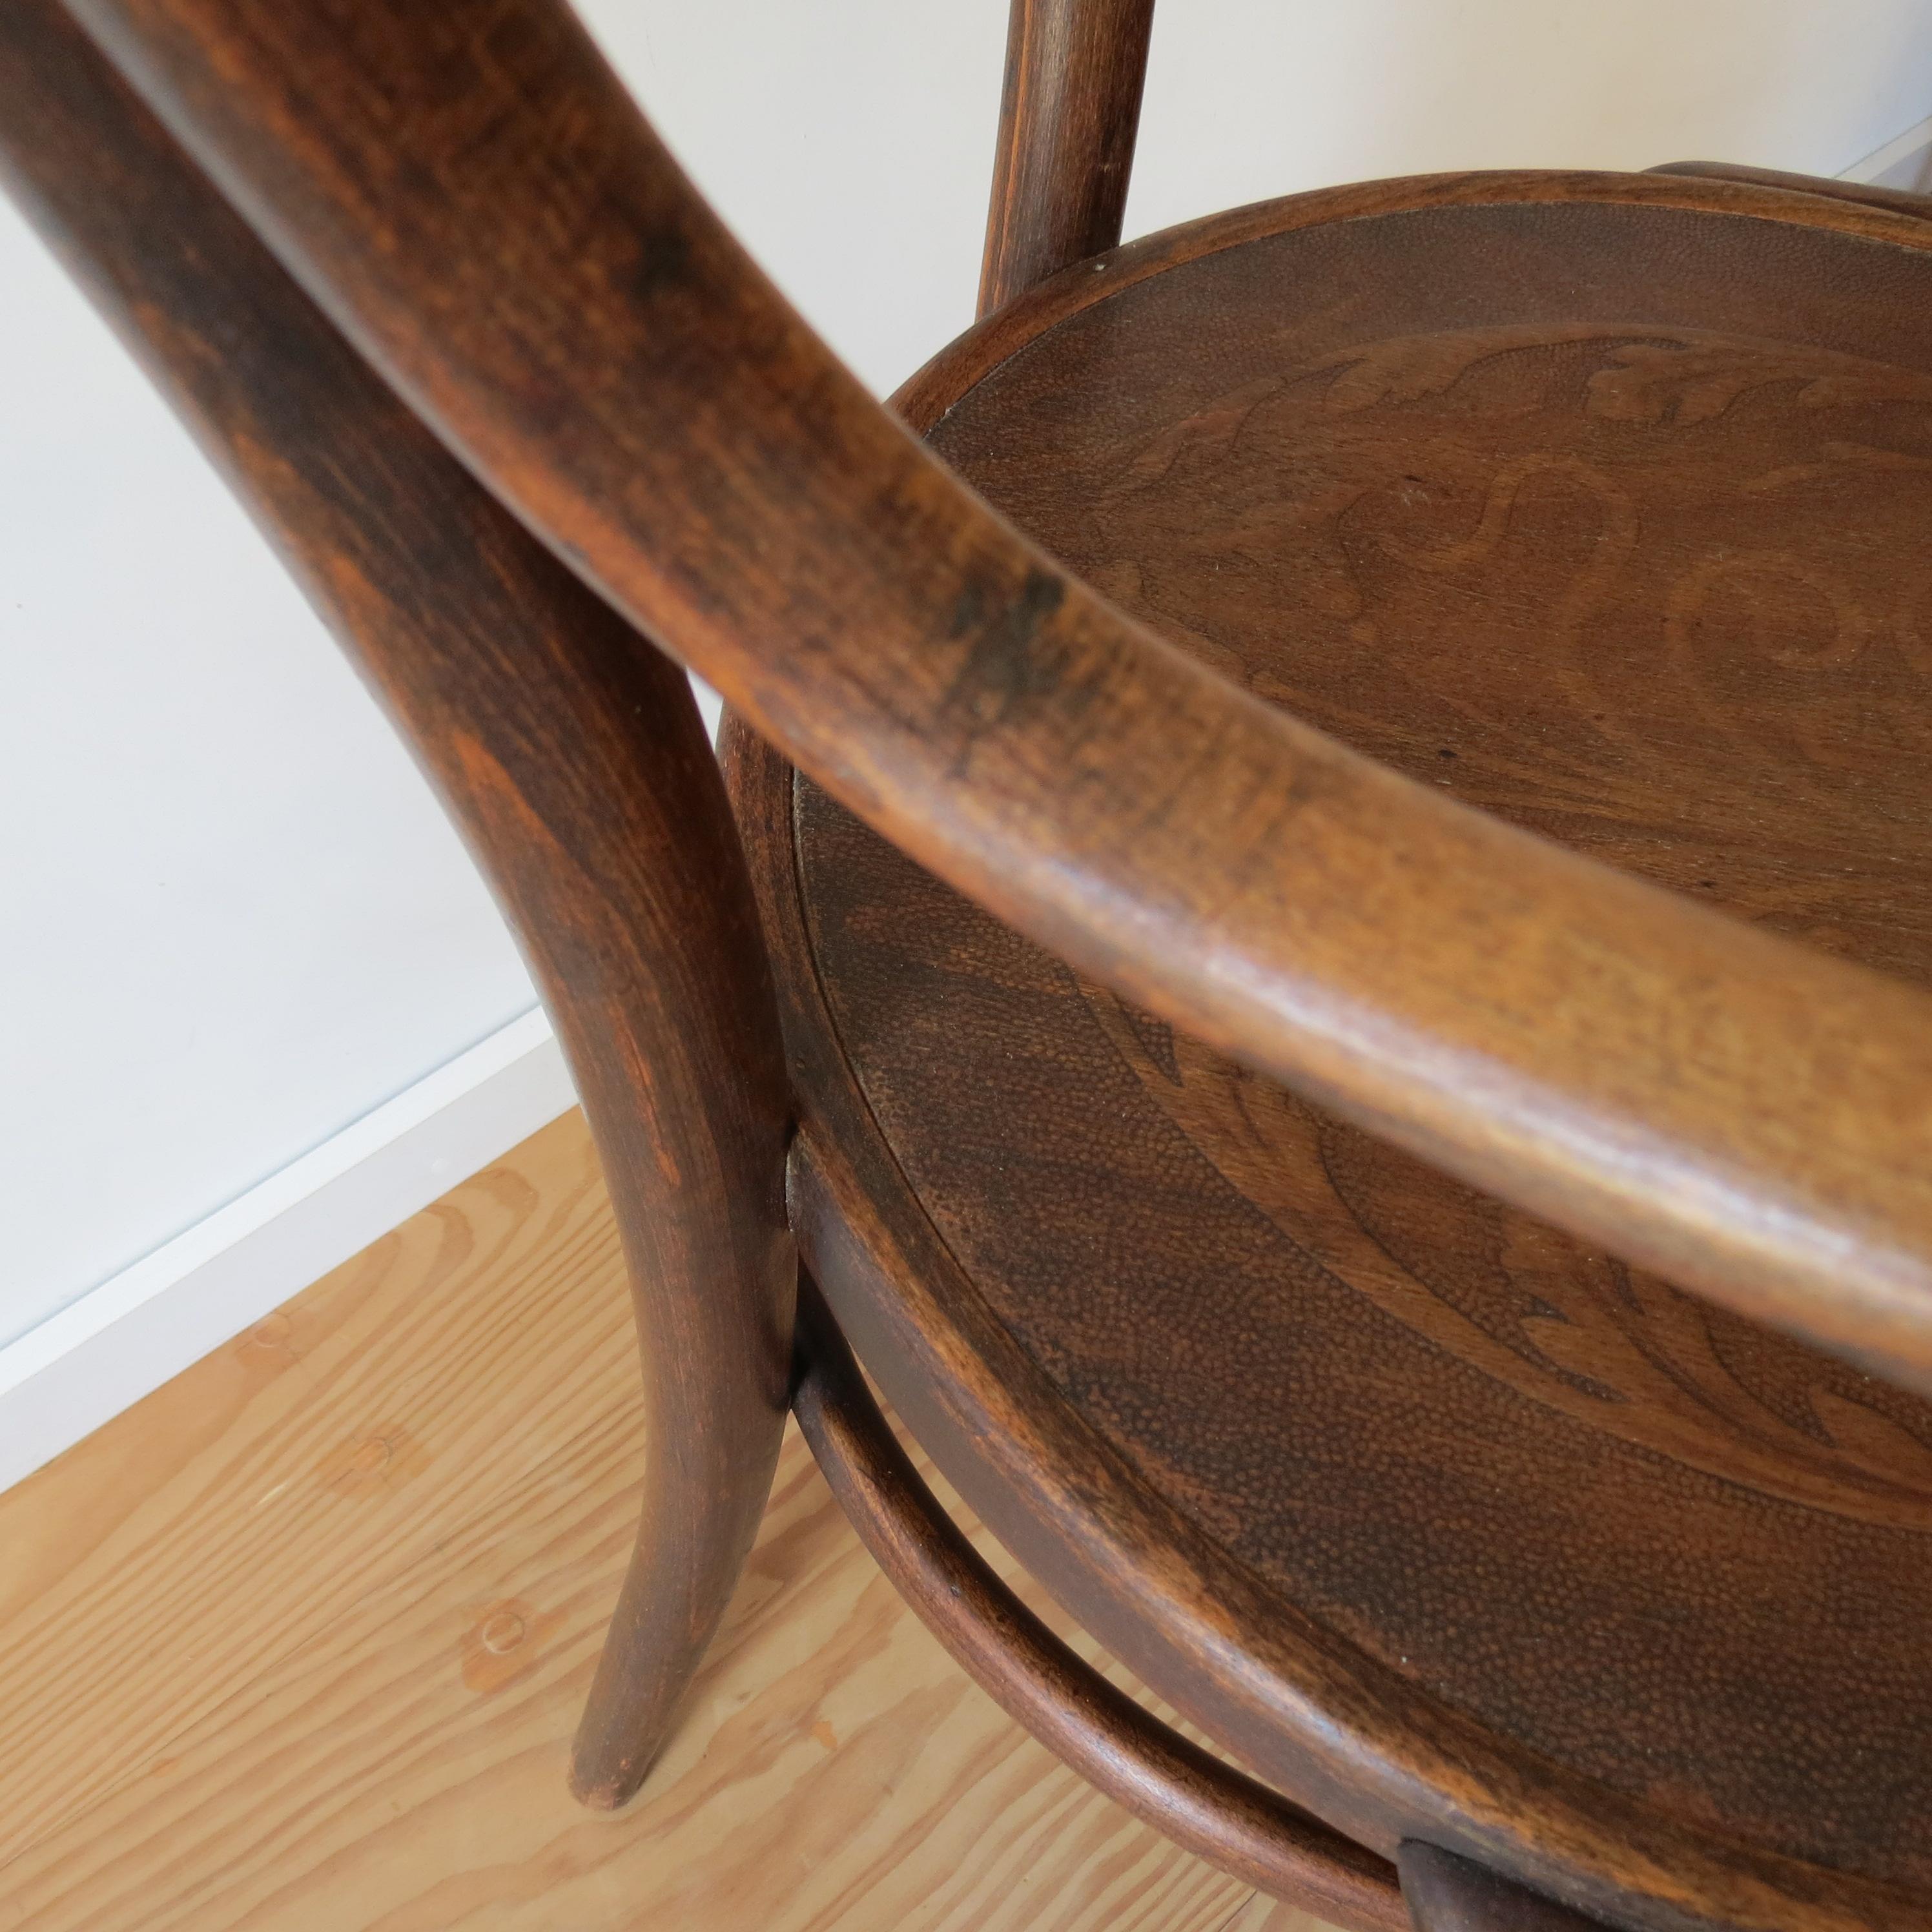 Antique Bentwood Chair No 14 by Thonet 19th Century Art Nouveau 4